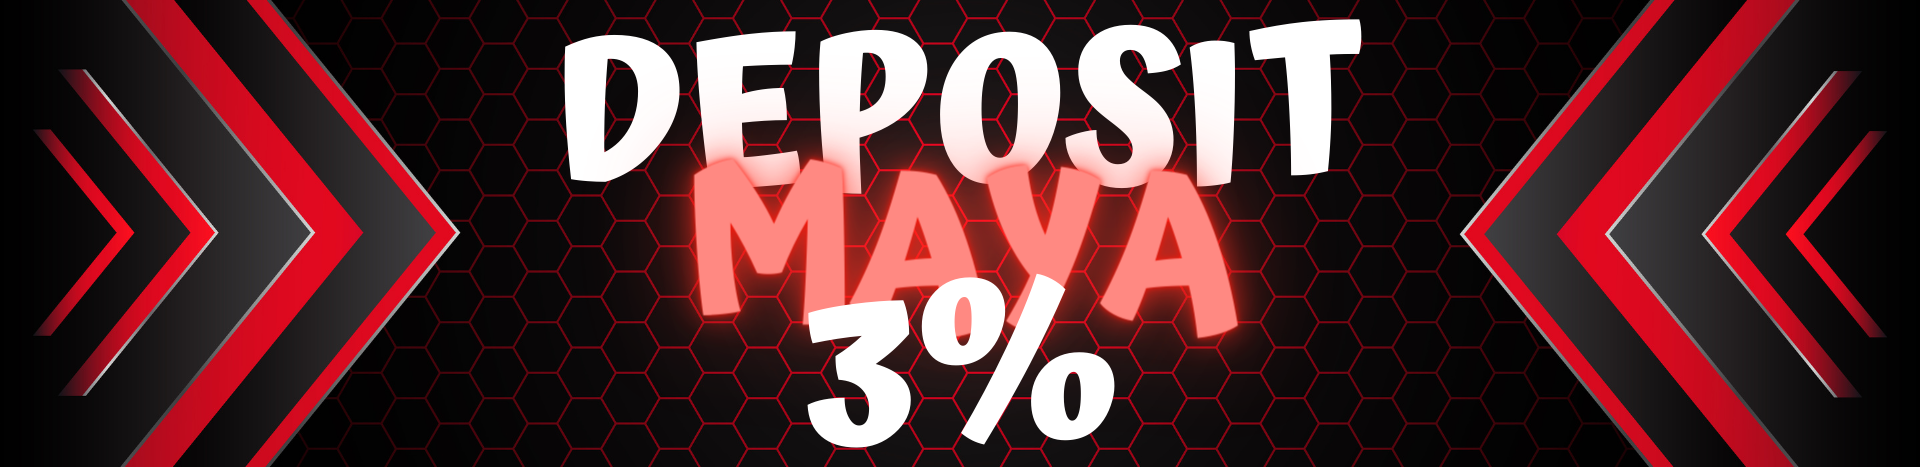 deposit-maya_banner